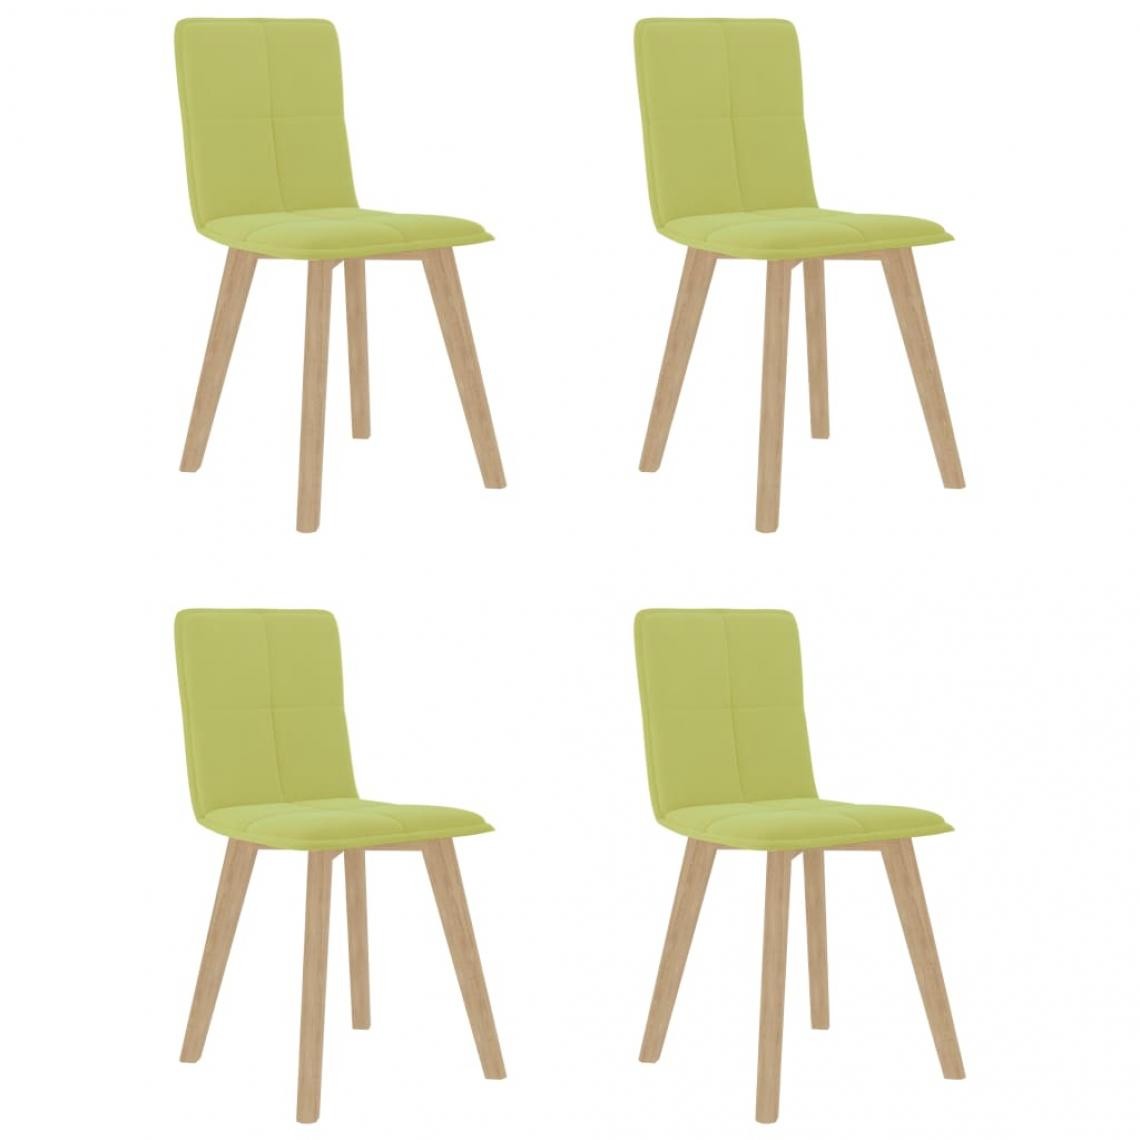 Decoshop26 - Lot de 4 chaises de salle à manger cuisine design moderne tissu vert CDS022053 - Chaises